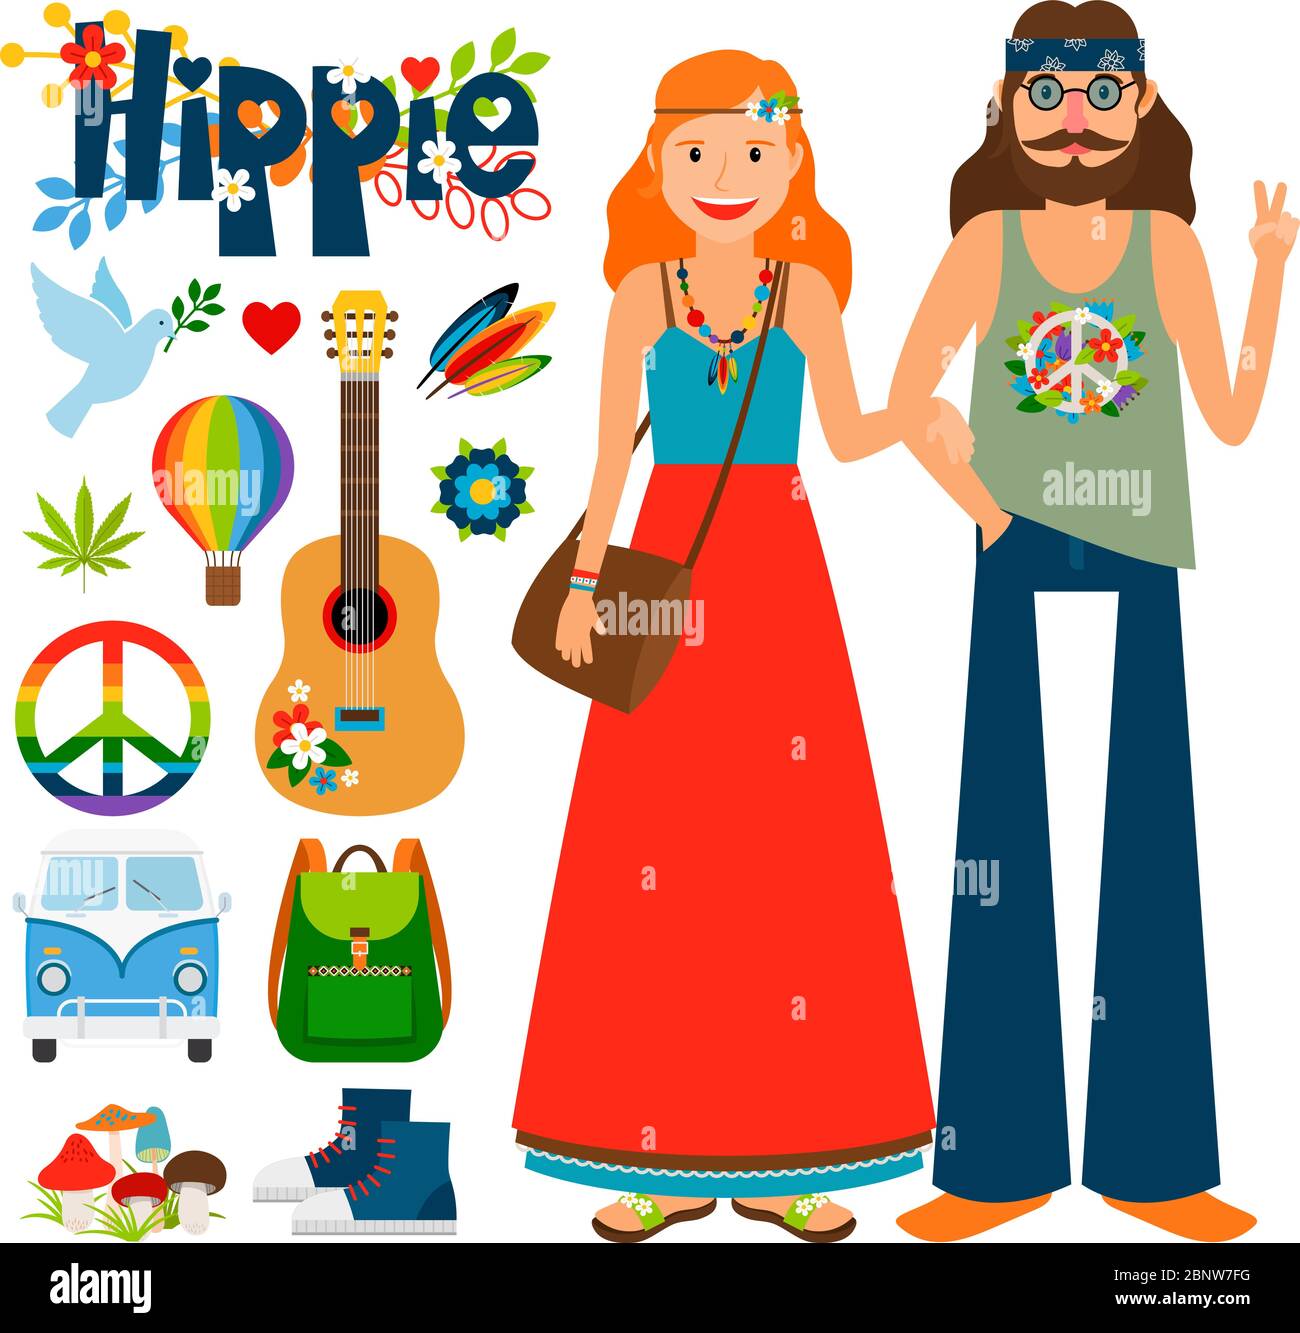 Vecteur de personnes hippie. Hippie femme avec cheveux longs et homme avec guitare Illustration de Vecteur